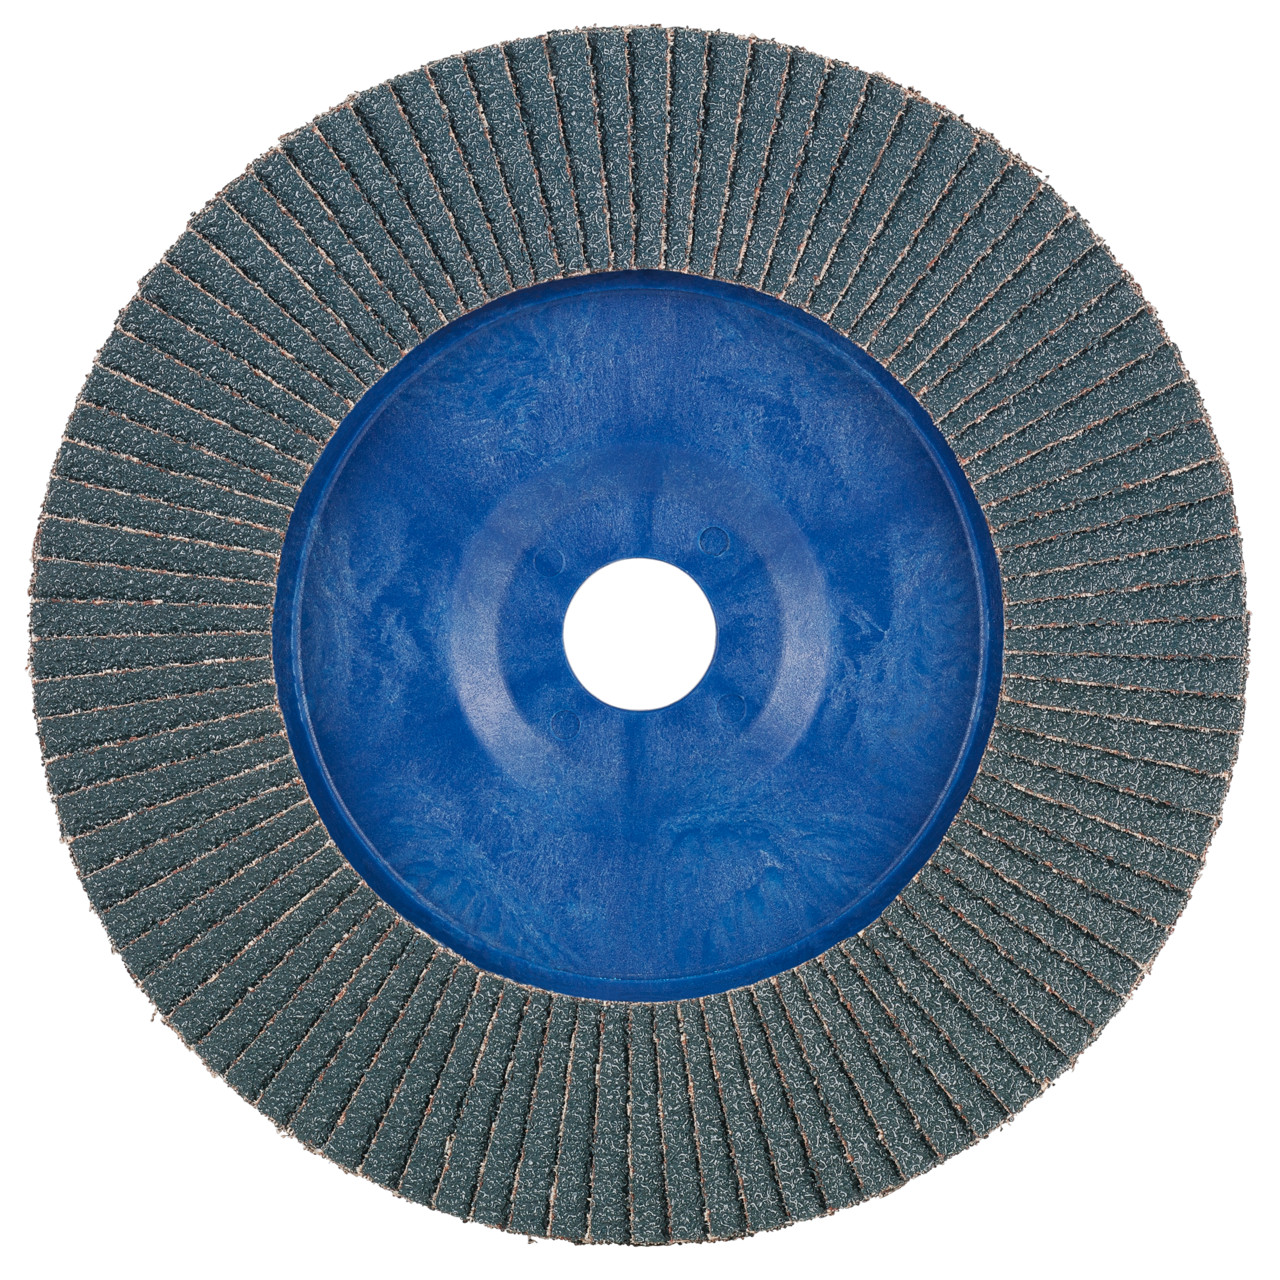 Rondella dentata Tyrolit DxH 125x22.2 2in1 per acciaio e acciaio inox, P60, forma: 28N - versione diritta (corpo portante in plastica), Art. 847925